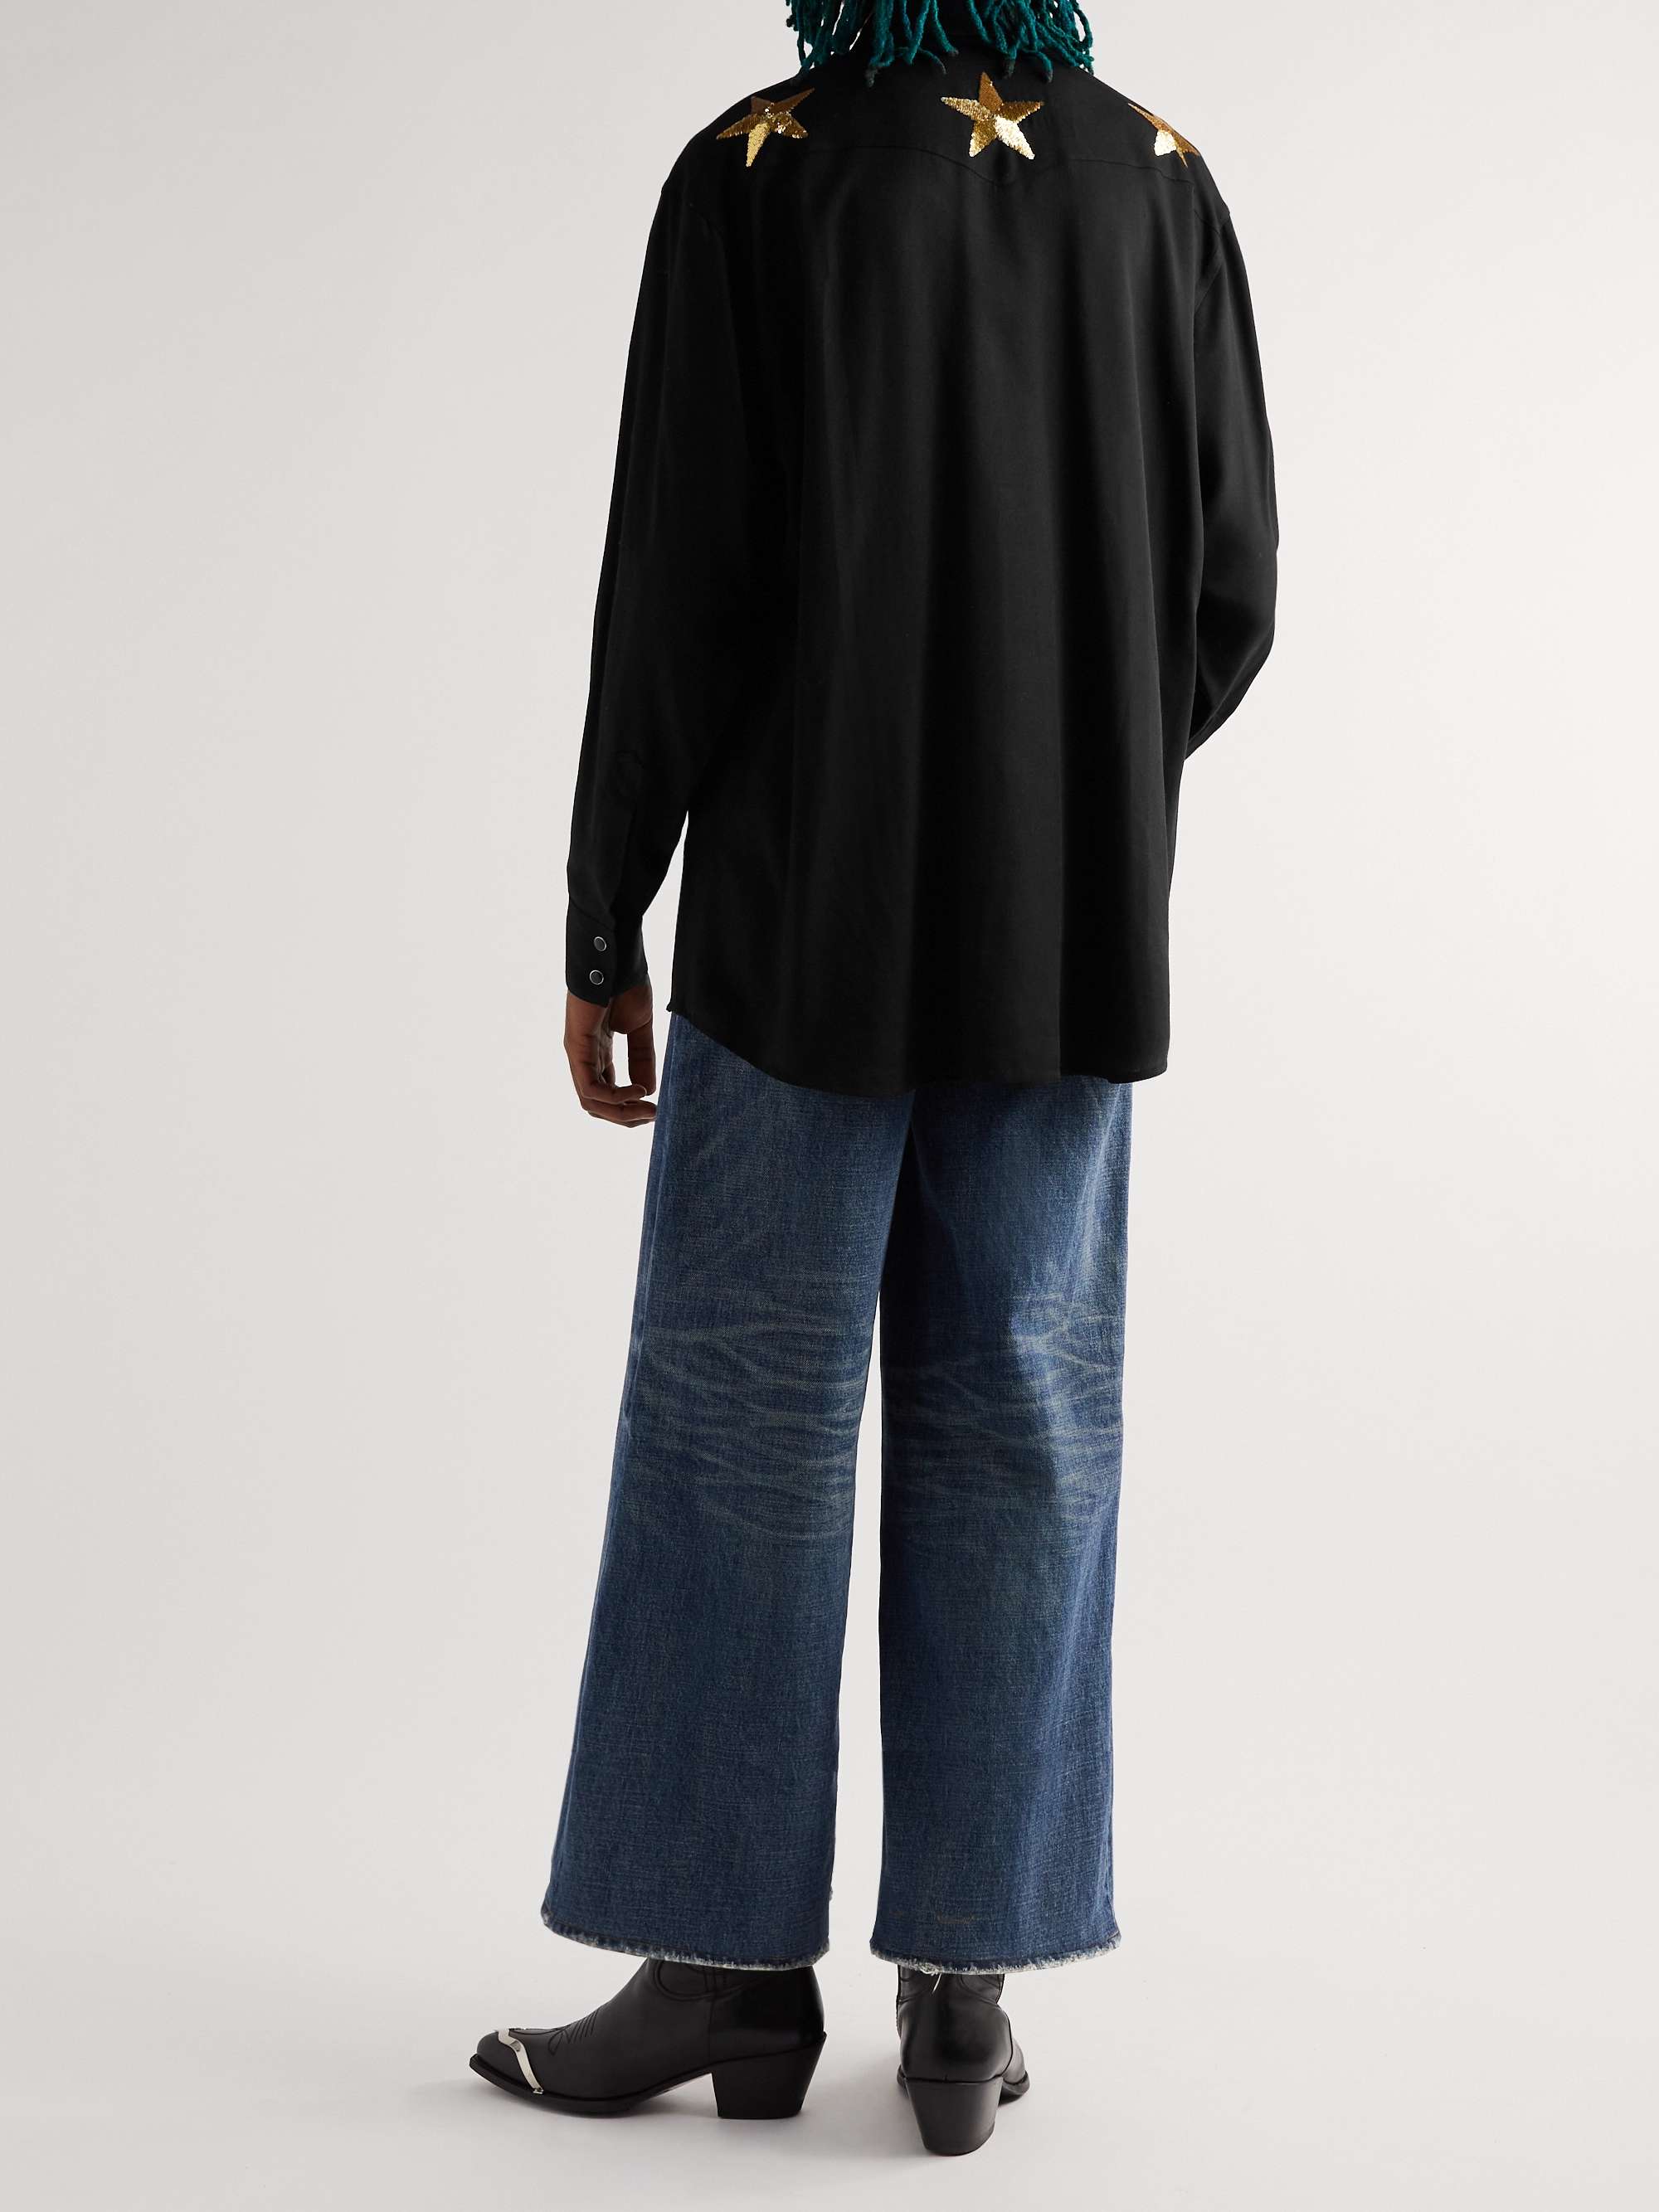 CELINE HOMME Sequin-Embellished Crepe Shirt